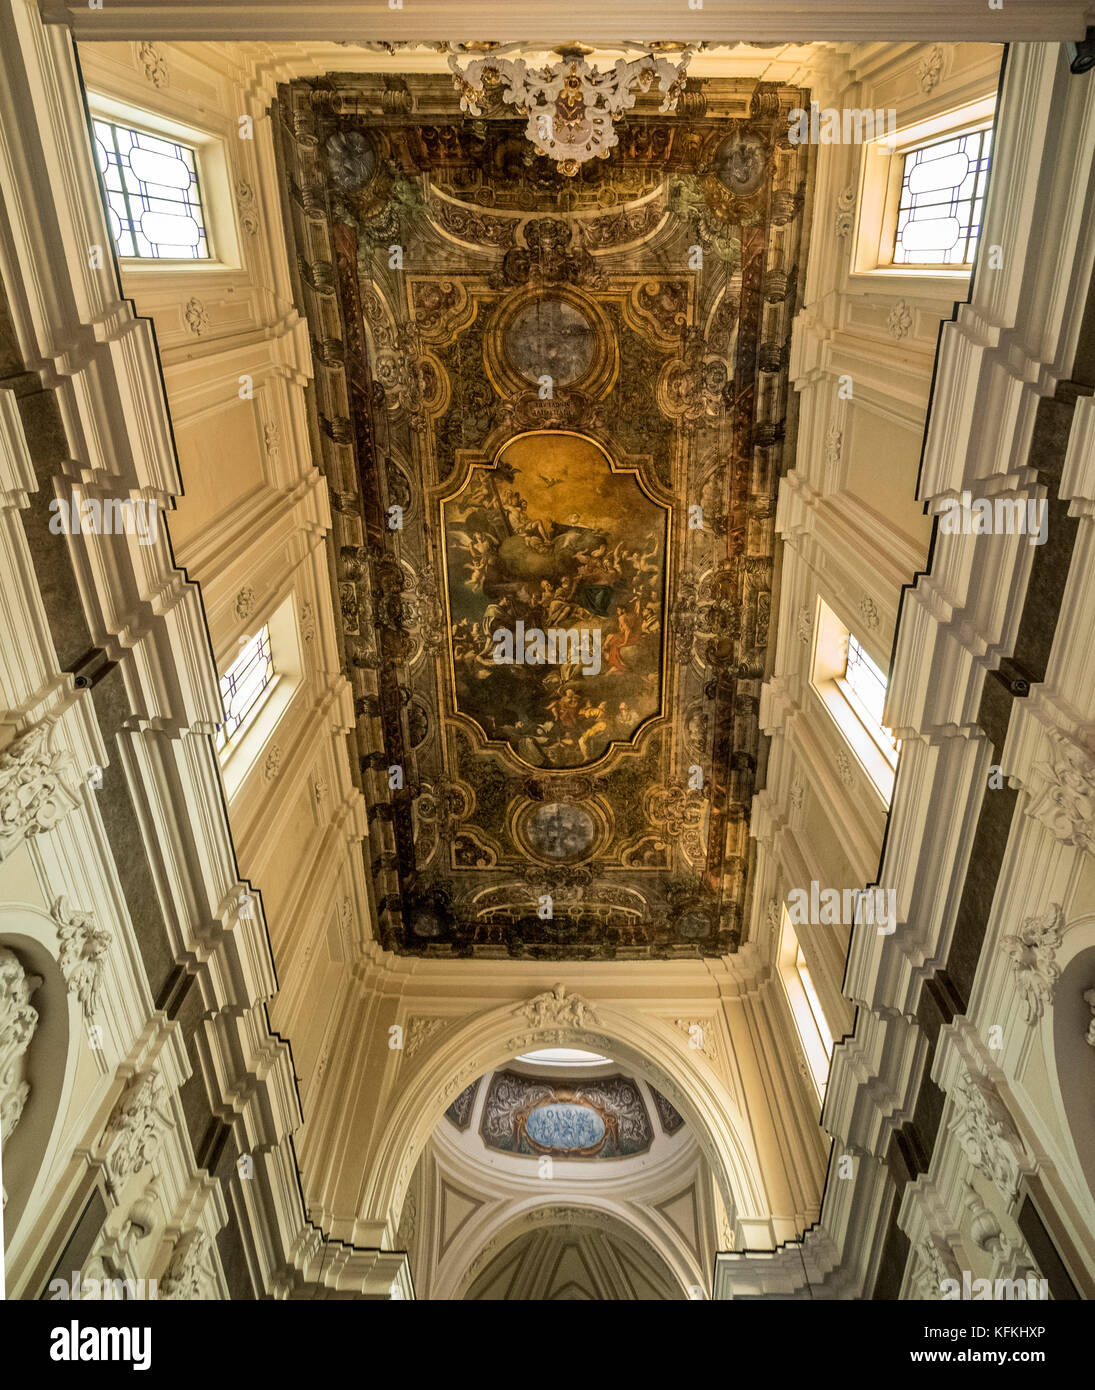 Ornate painted interior ceiling of Santuario Della Madonna Del Carmine, Piazza Tasso, Sorrento, Italy. Stock Photo